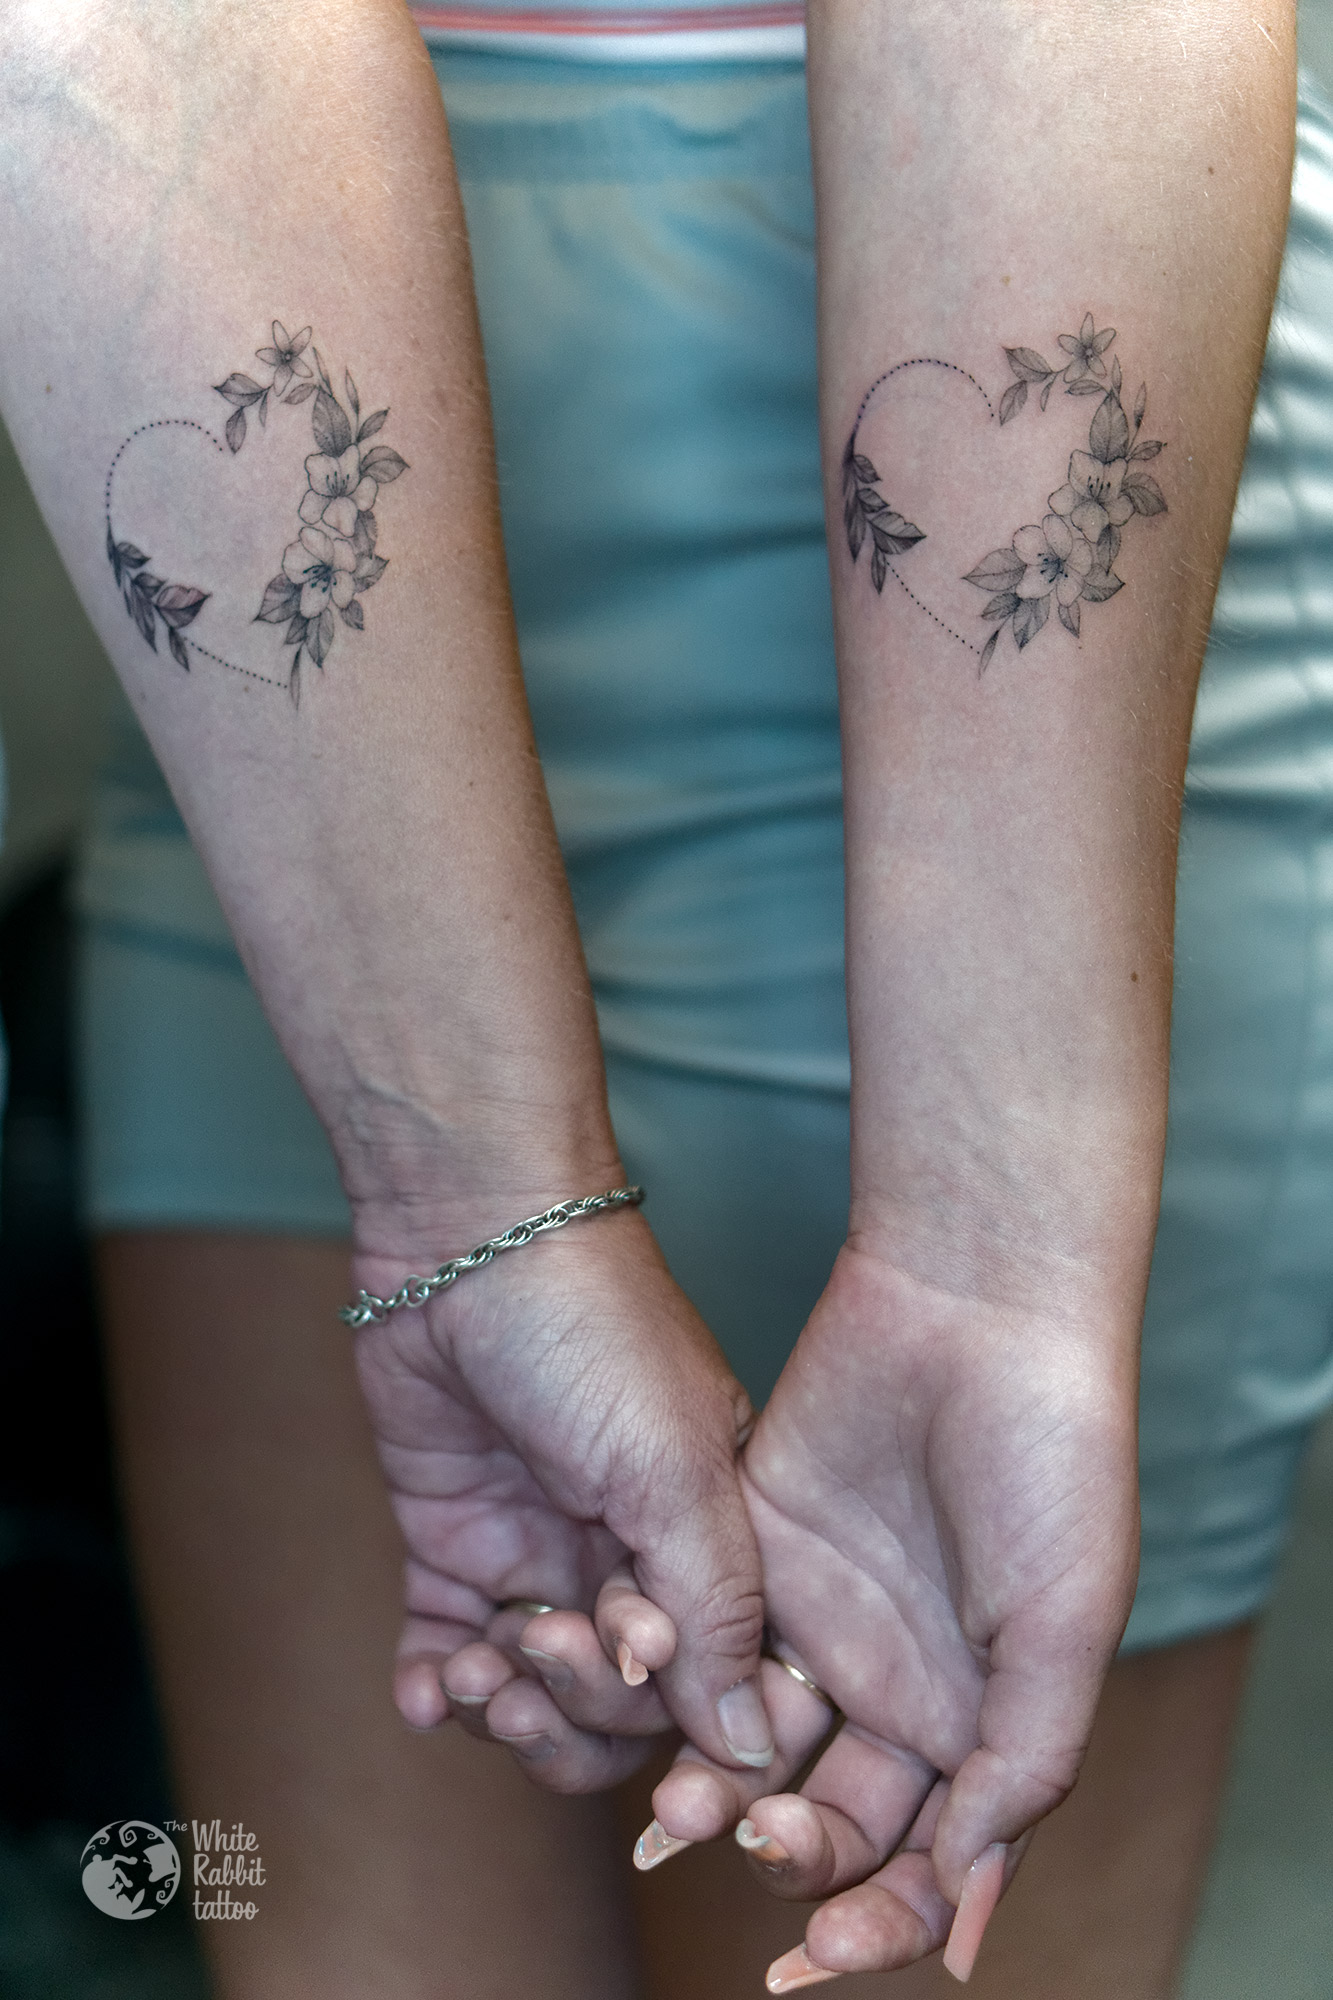 Smoczy tatuaż i kwiatowe wzorki Pinki